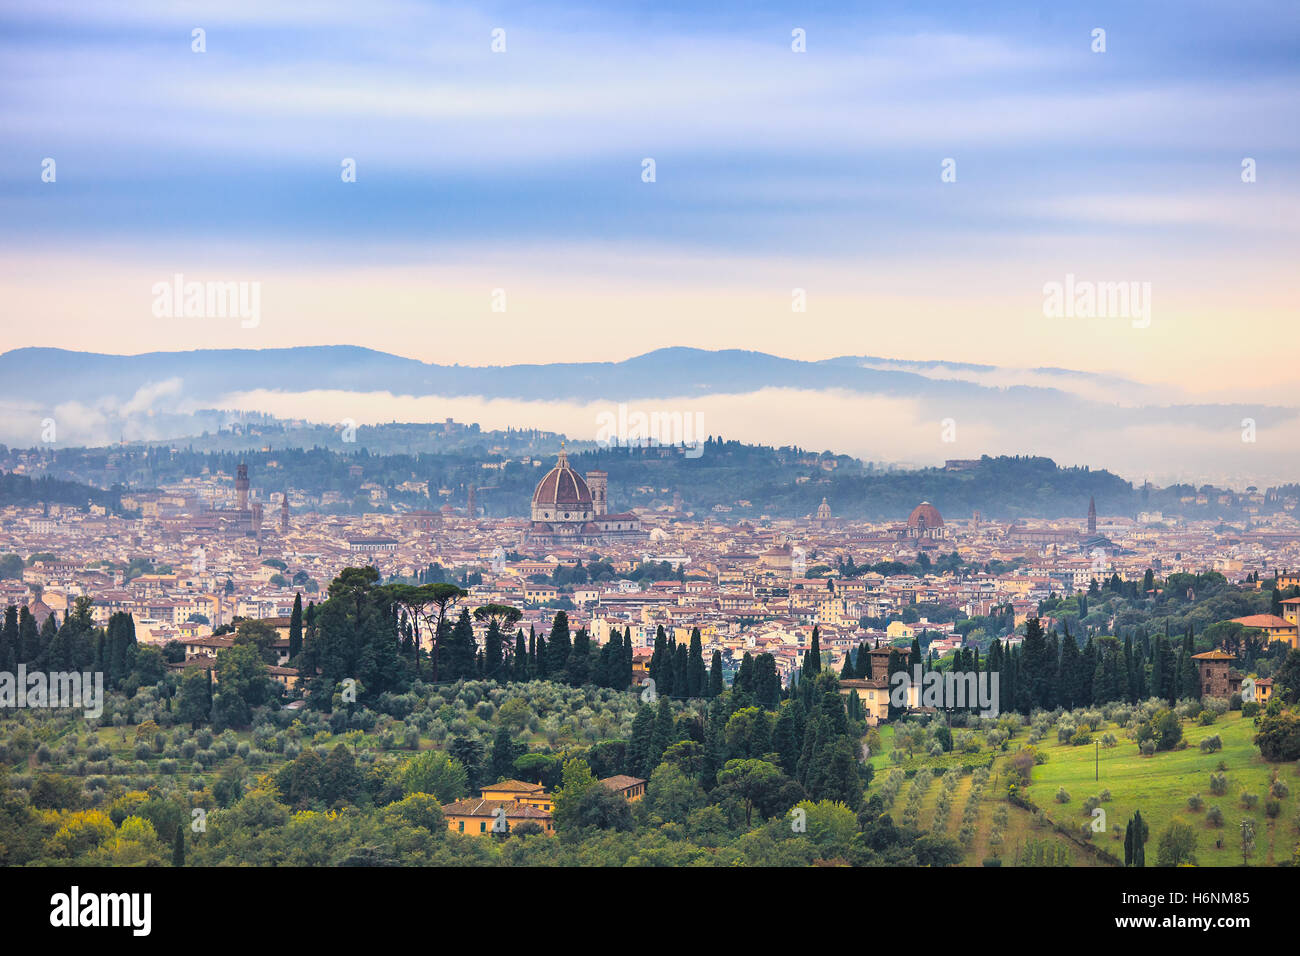 Florencia o Firenze antena mañana neblinosa del paisaje urbano. Vista panorámica desde la colina Fiesole. El Palazzo Vecchio y el Duomo. Toscana Foto de stock